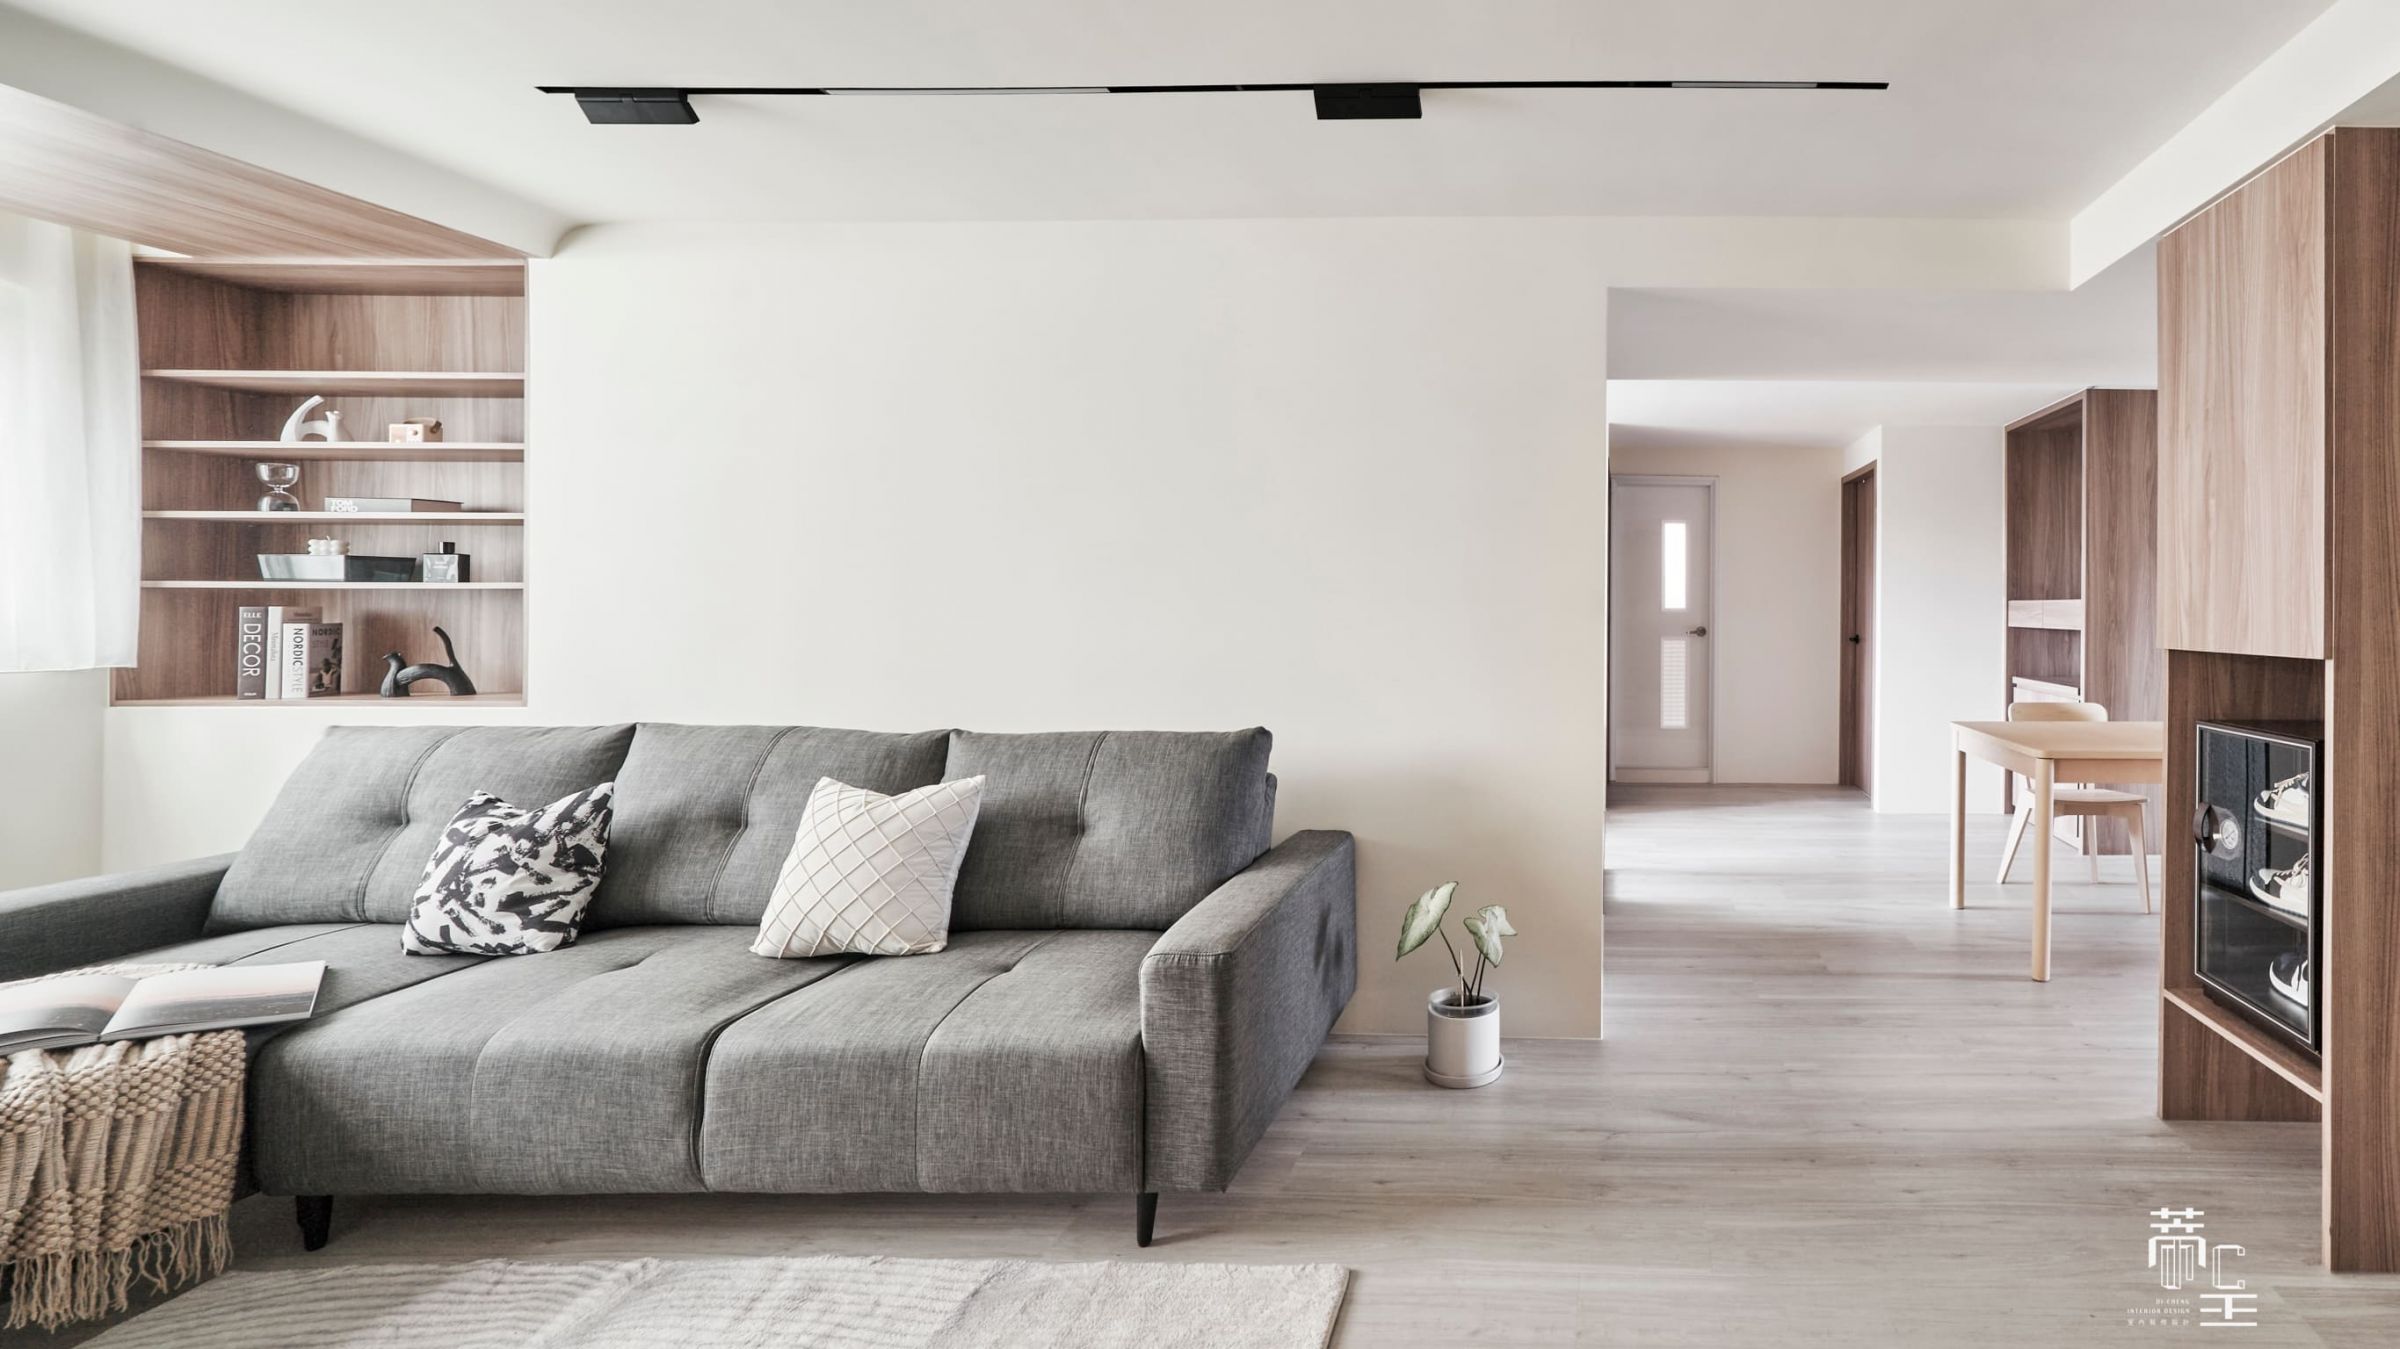 ｜客廳空間｜ 整體空間採用大面積的白牆，讓視覺有延伸得效果，空間感也會更加有景深感。